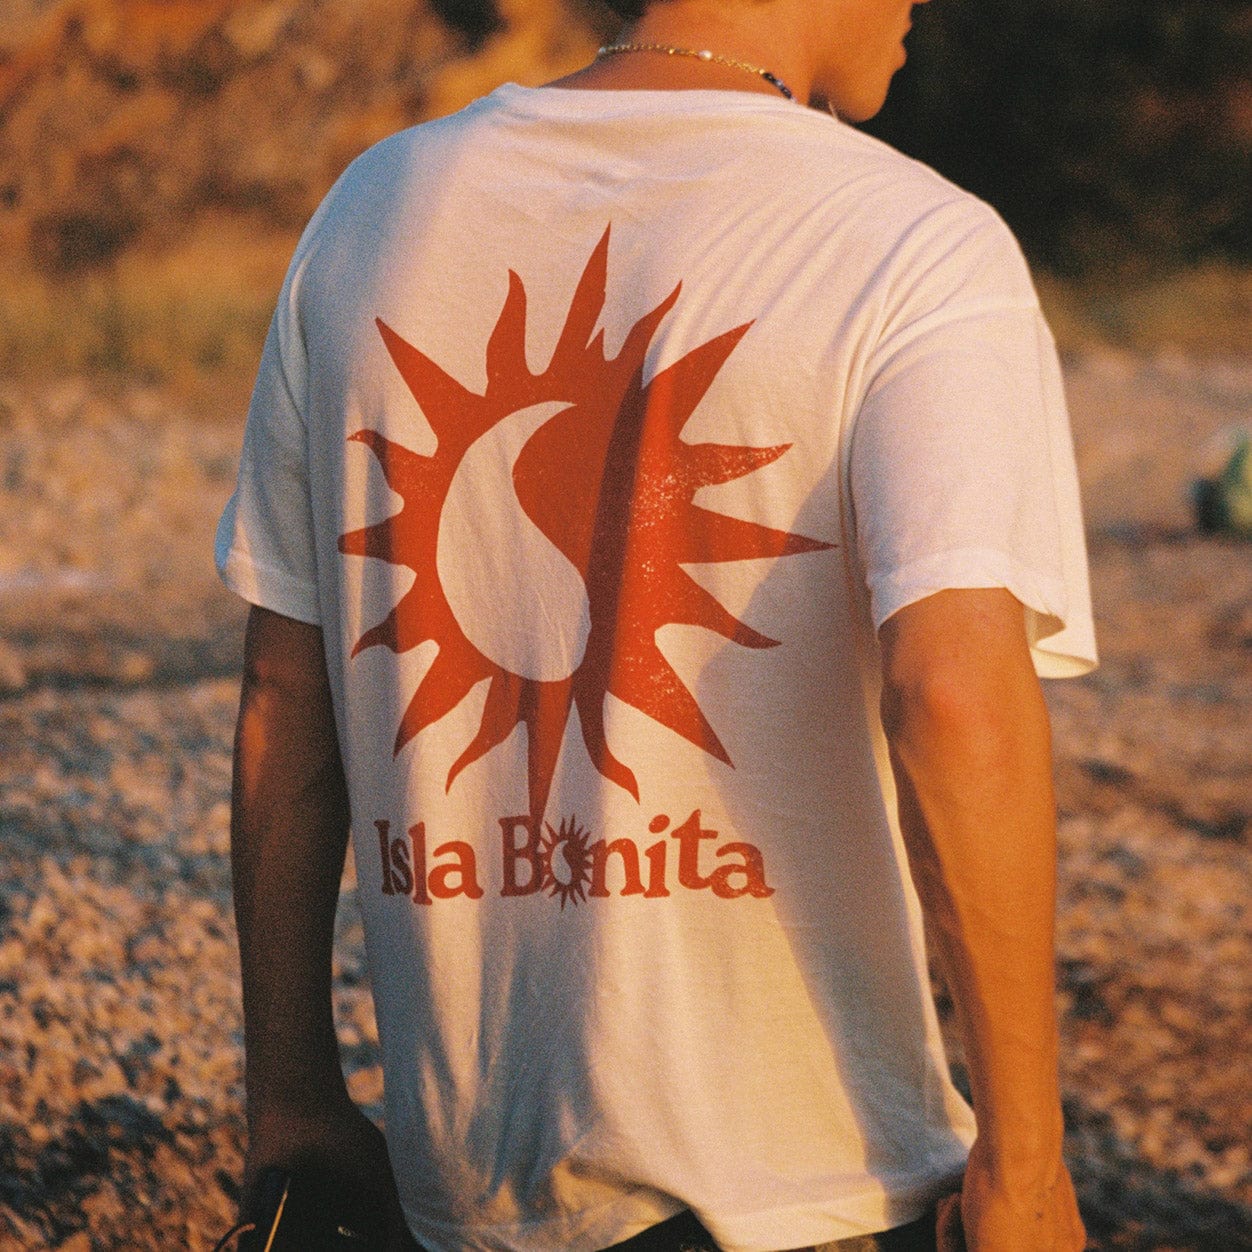 Twojeys Ropa y accesorios Isla Bonita T-Shirt